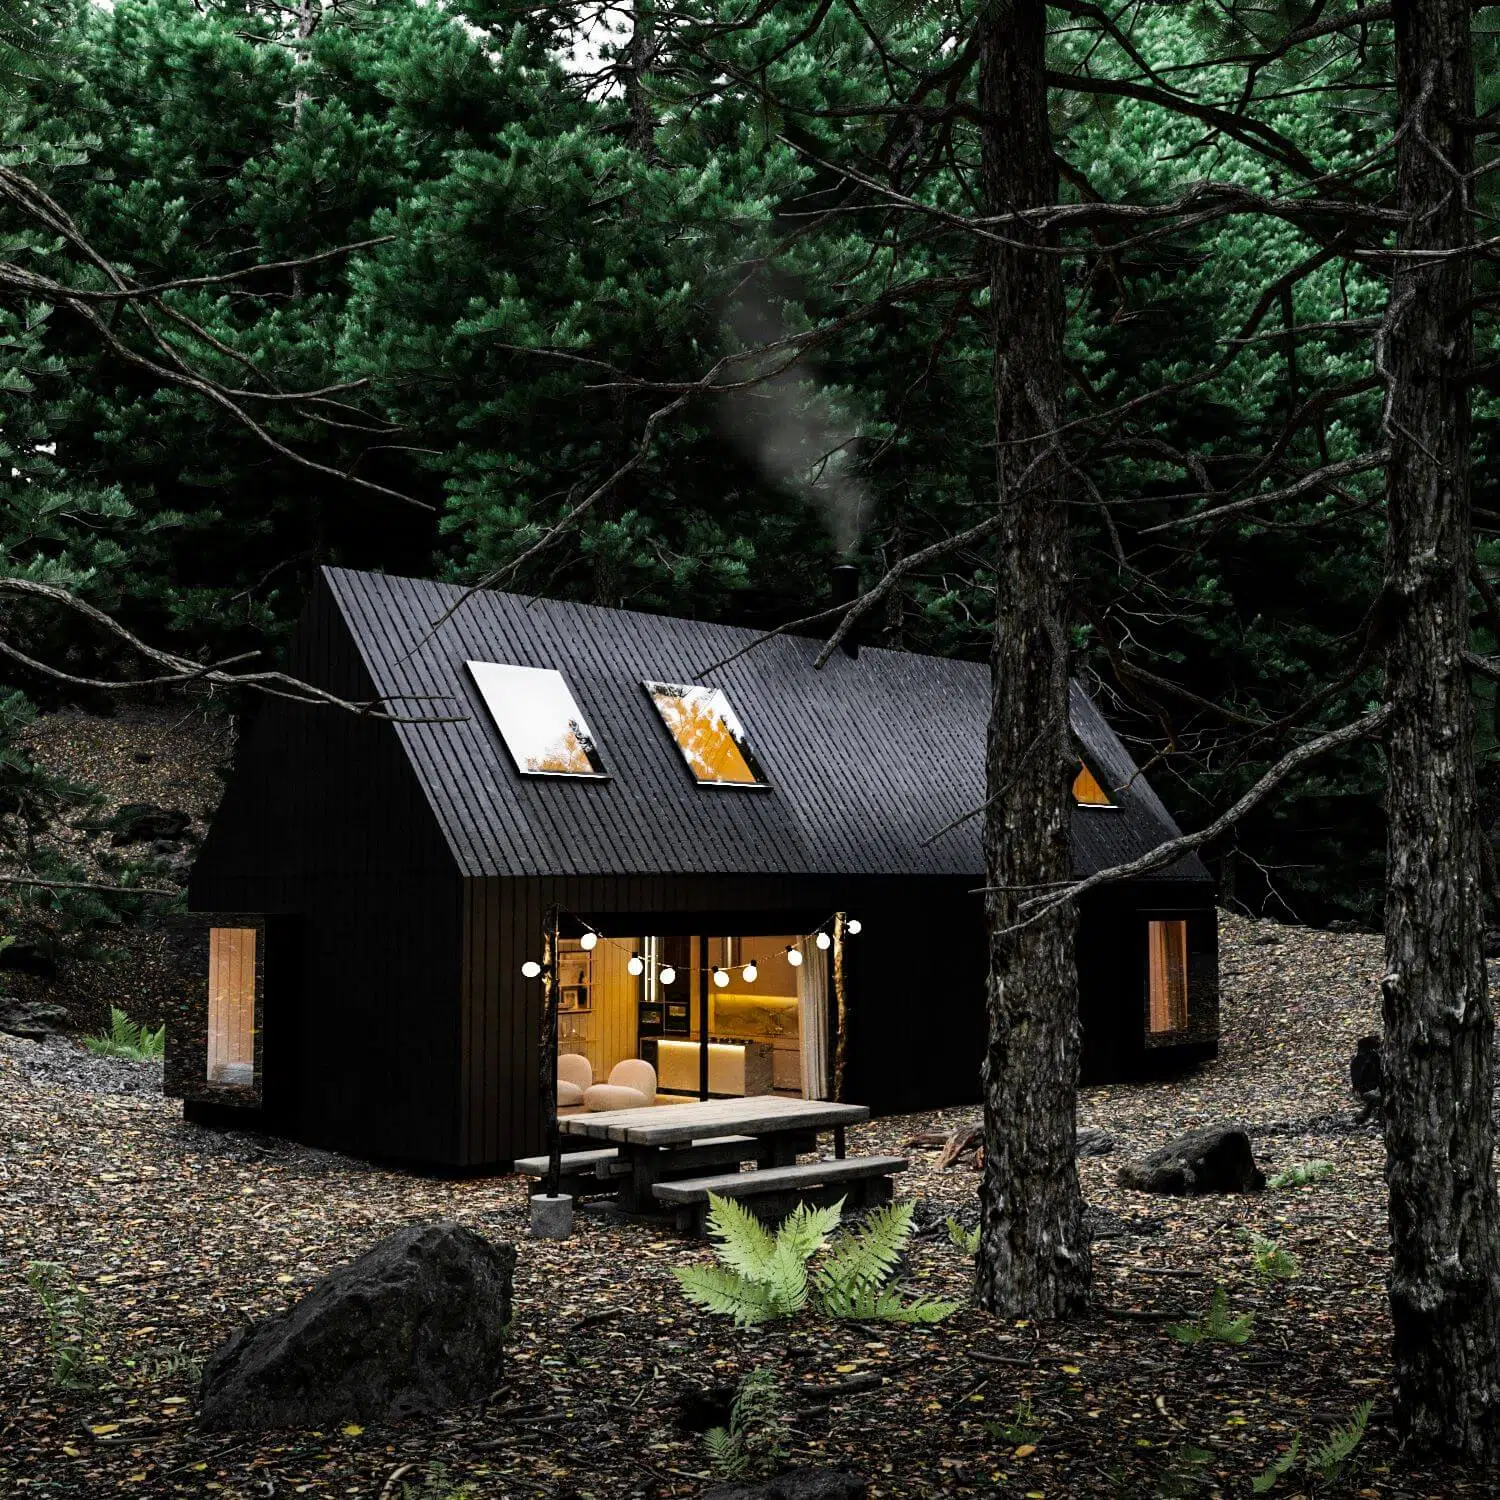 Leśna chata w Quebecu w Kanadzie by Iltecor Studio